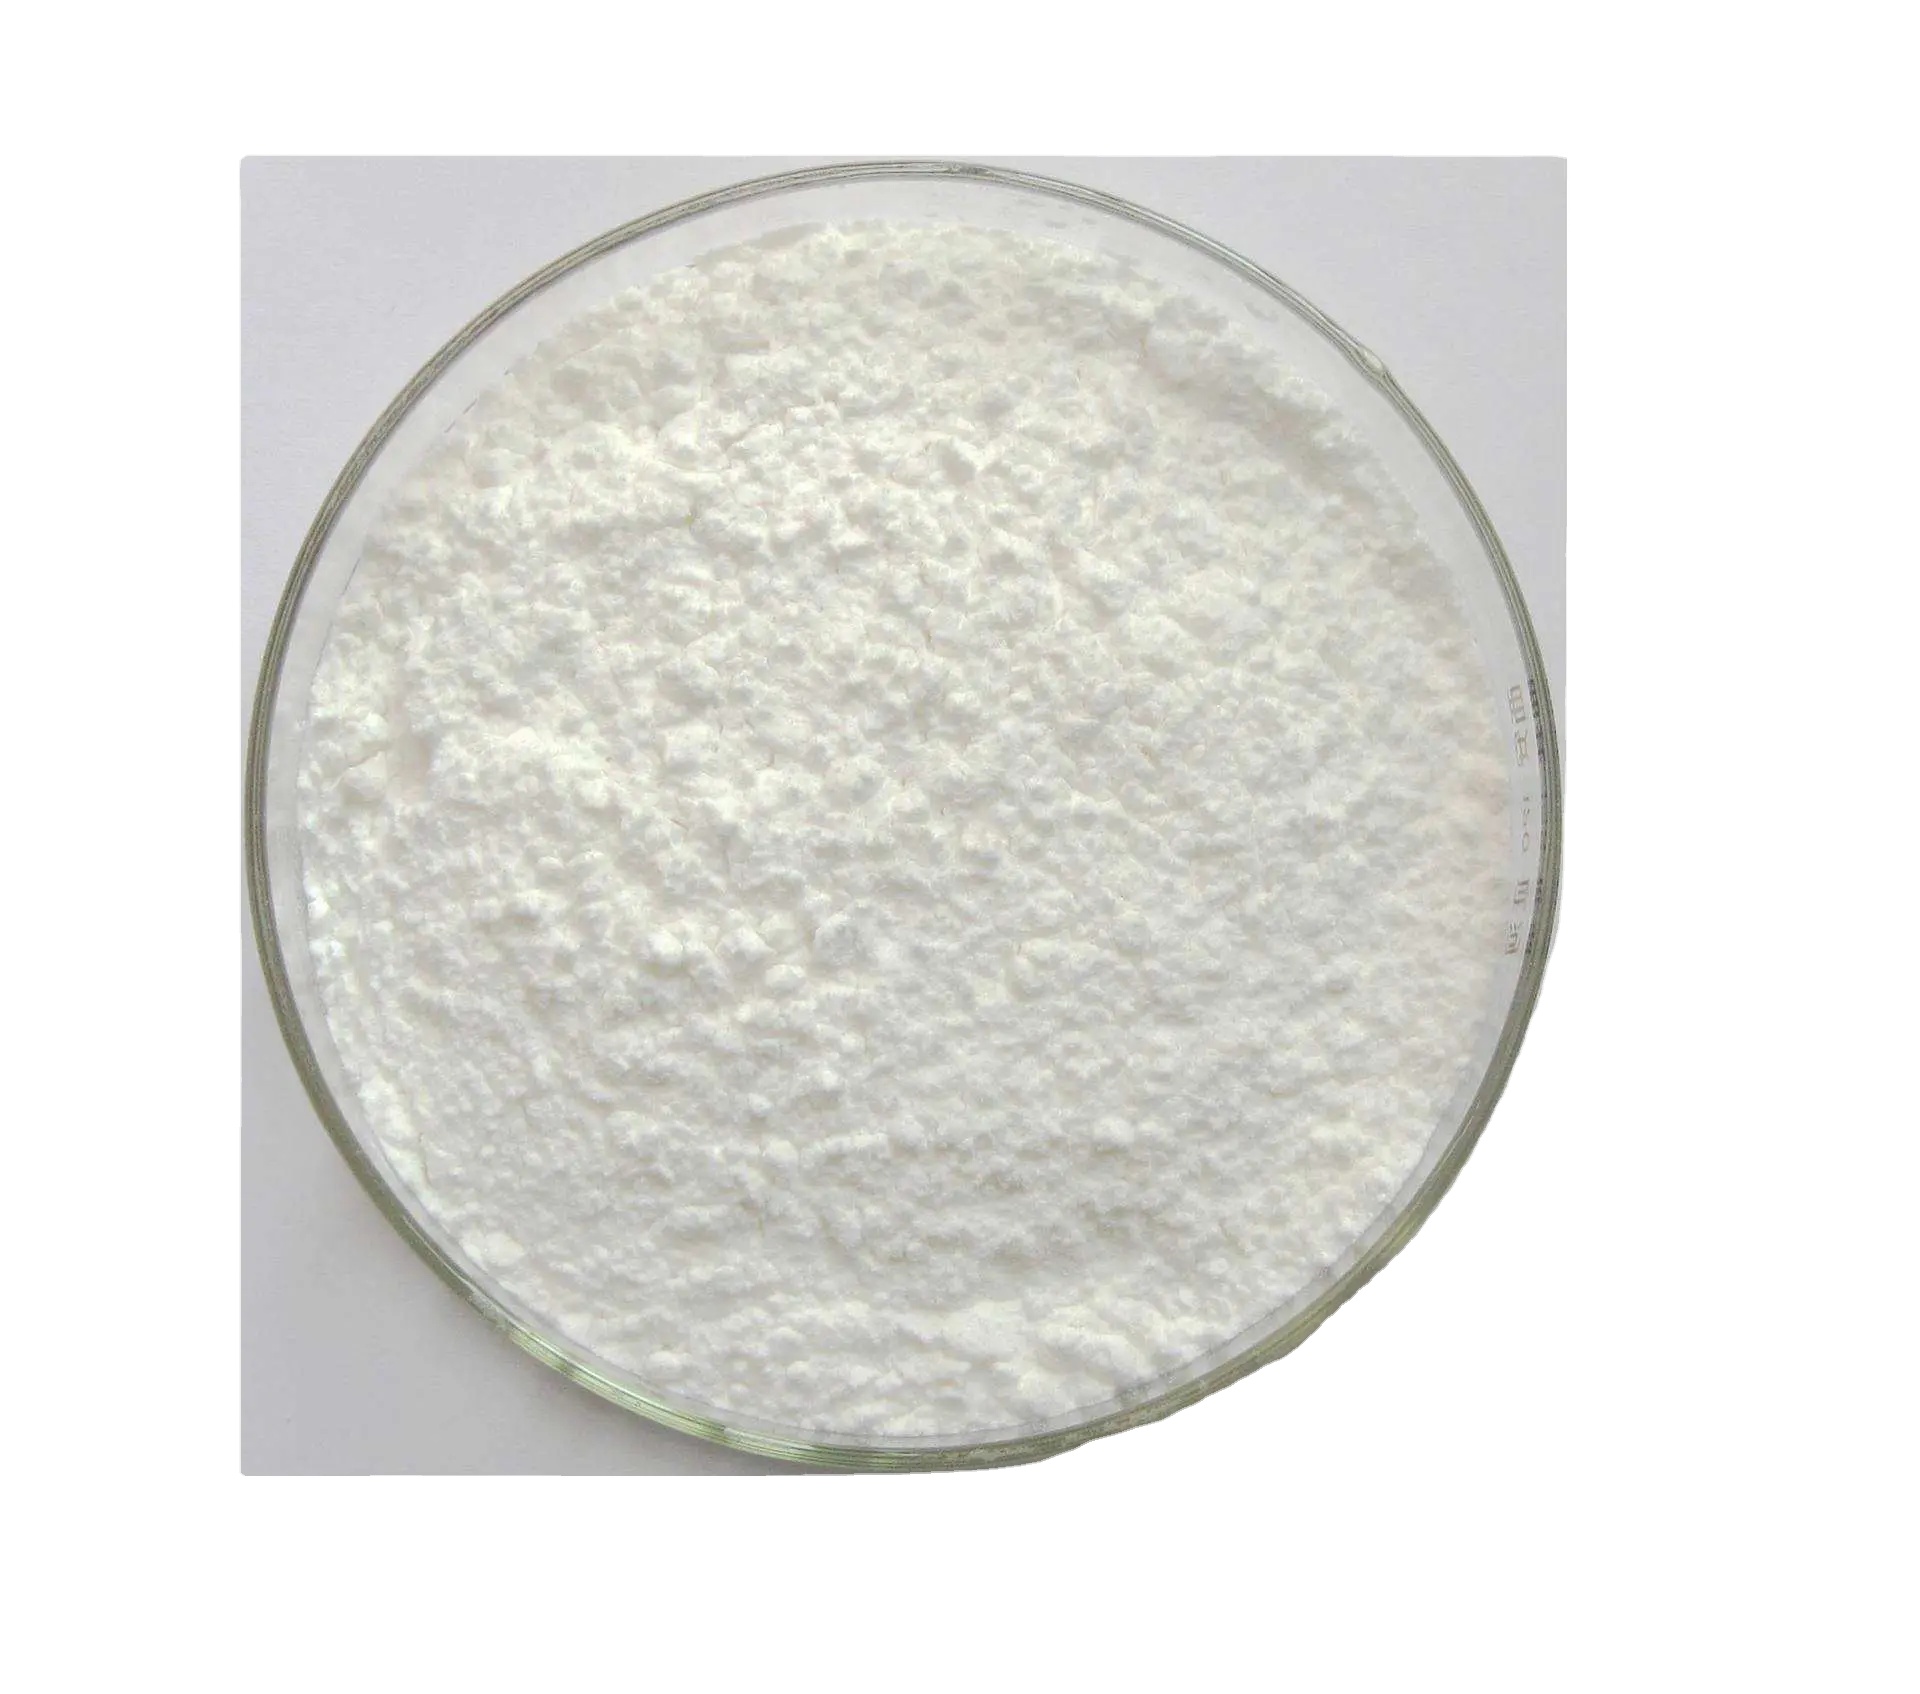 Acheter Agent de blanchiment 4,4''-Bis(chloromethyl)-1,1''-biphenyl Cas1667-10-3,Agent de blanchiment 4,4''-Bis(chloromethyl)-1,1''-biphenyl Cas1667-10-3 Prix,Agent de blanchiment 4,4''-Bis(chloromethyl)-1,1''-biphenyl Cas1667-10-3 Marques,Agent de blanchiment 4,4''-Bis(chloromethyl)-1,1''-biphenyl Cas1667-10-3 Fabricant,Agent de blanchiment 4,4''-Bis(chloromethyl)-1,1''-biphenyl Cas1667-10-3 Quotes,Agent de blanchiment 4,4''-Bis(chloromethyl)-1,1''-biphenyl Cas1667-10-3 Société,